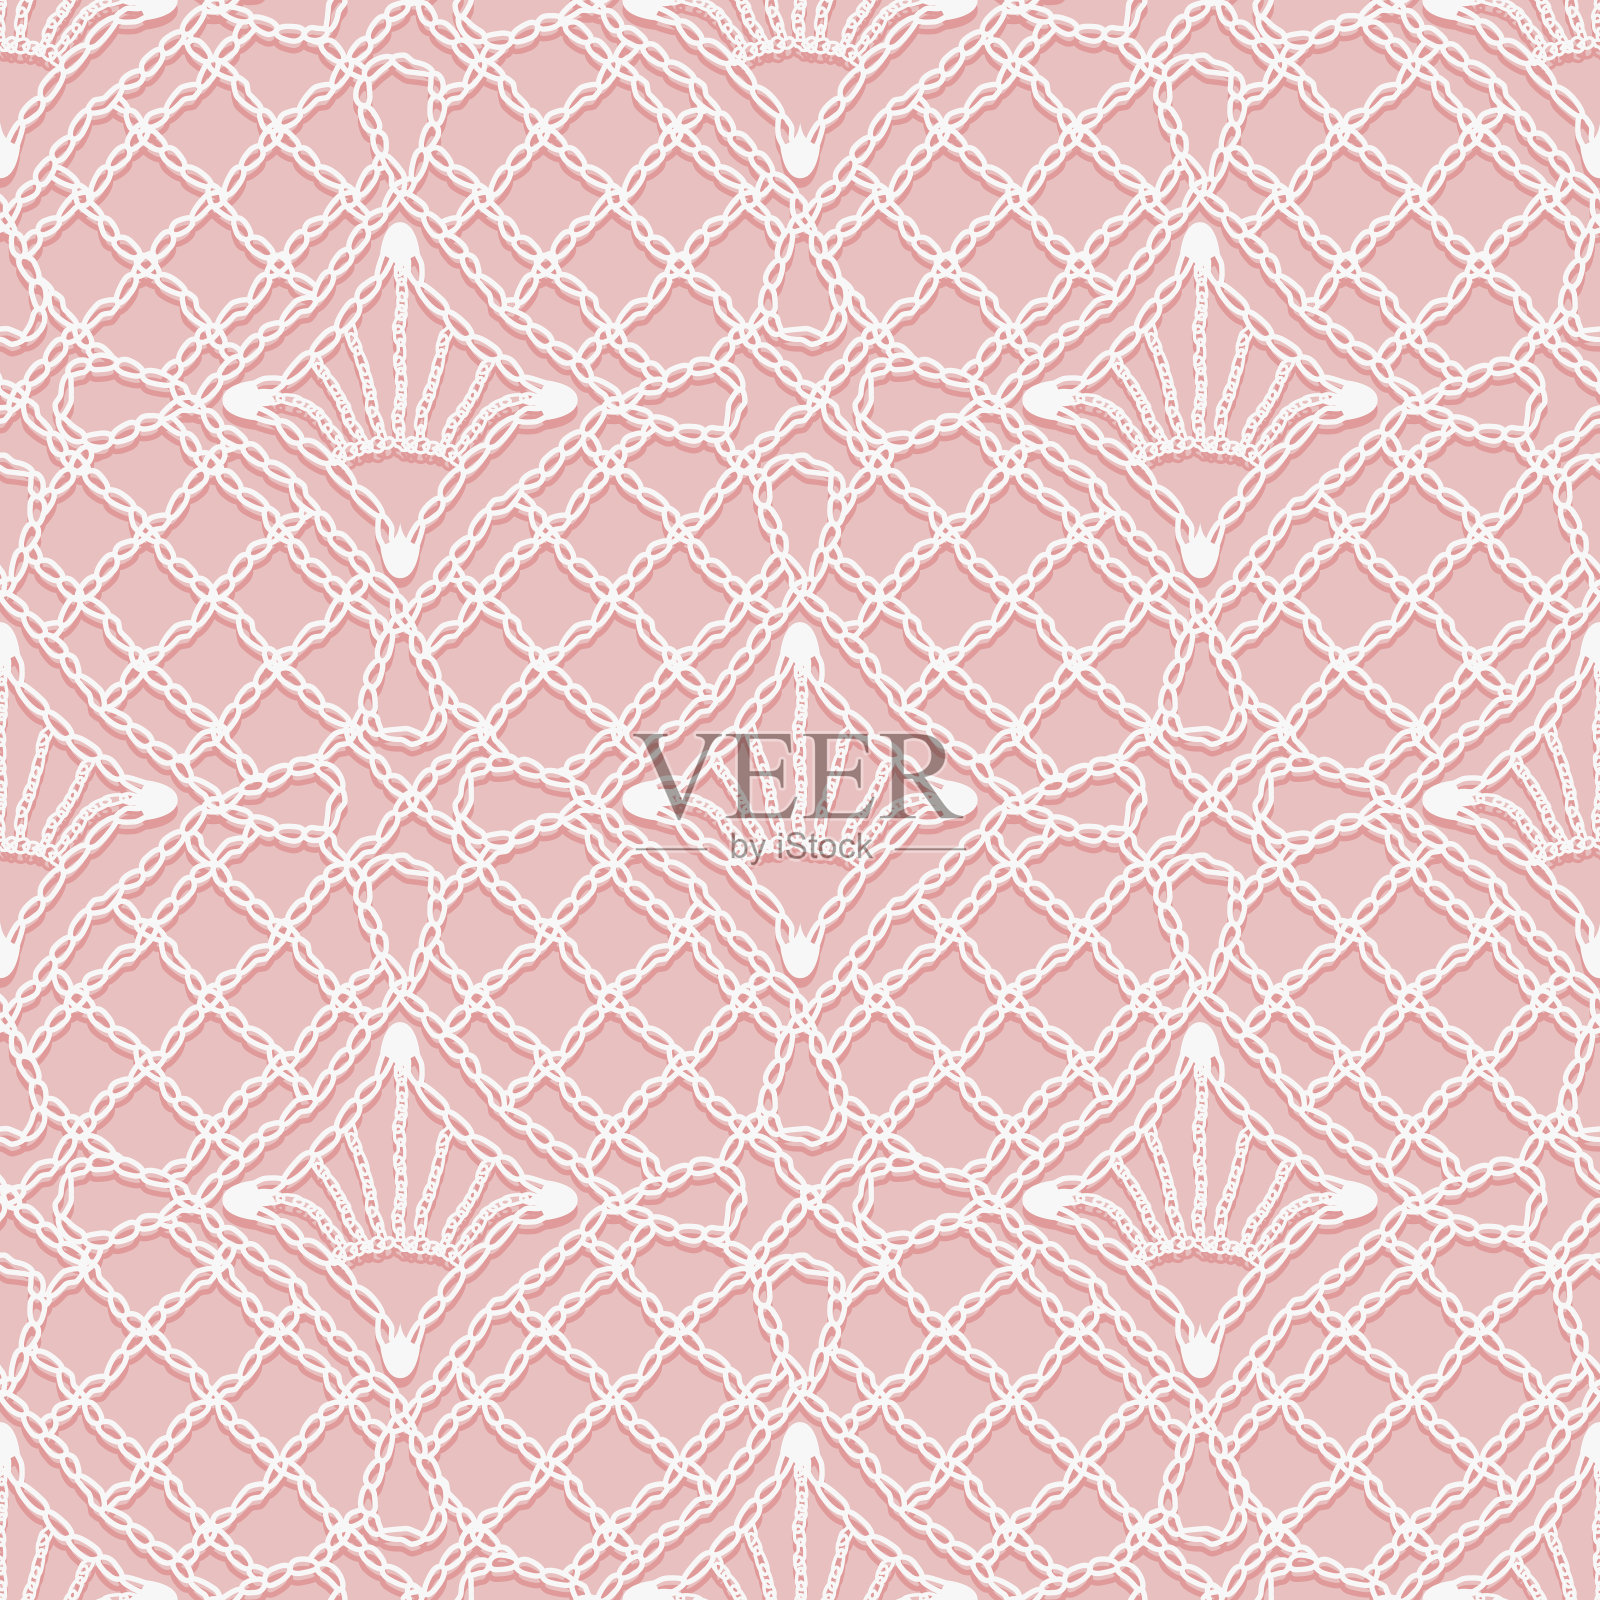 针织花边的无缝图案。粉色背景上的白色铰链和装饰线。设计元素图片